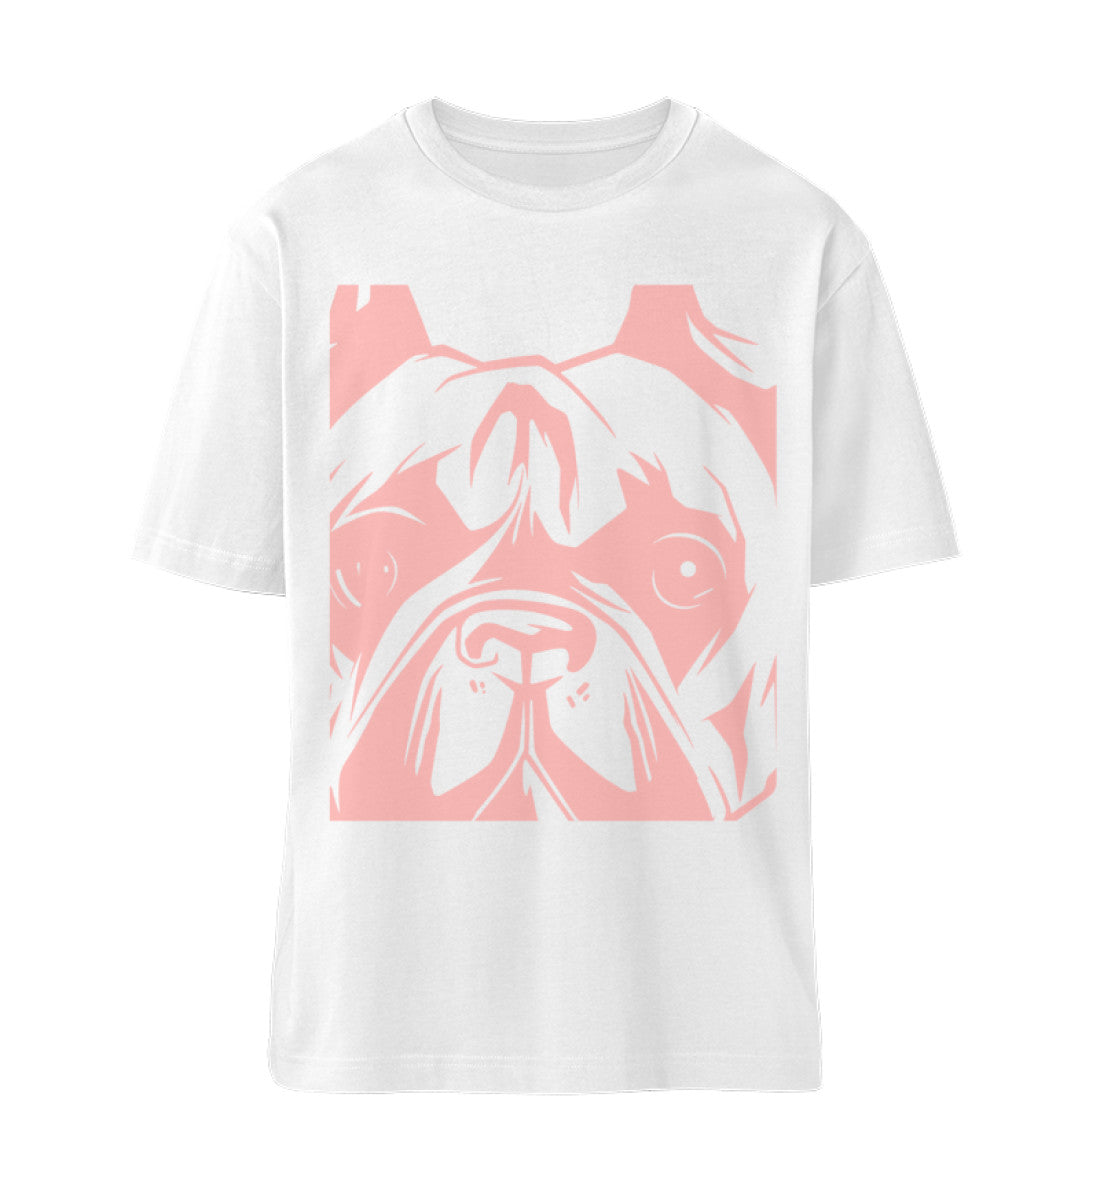 Weißes T-Shirt Unisex Relaxed Fit für Frauen und Männer bedruckt mit dem Design der Roger Rockawoo Clothing Kollektion we are not alone french bulldogge